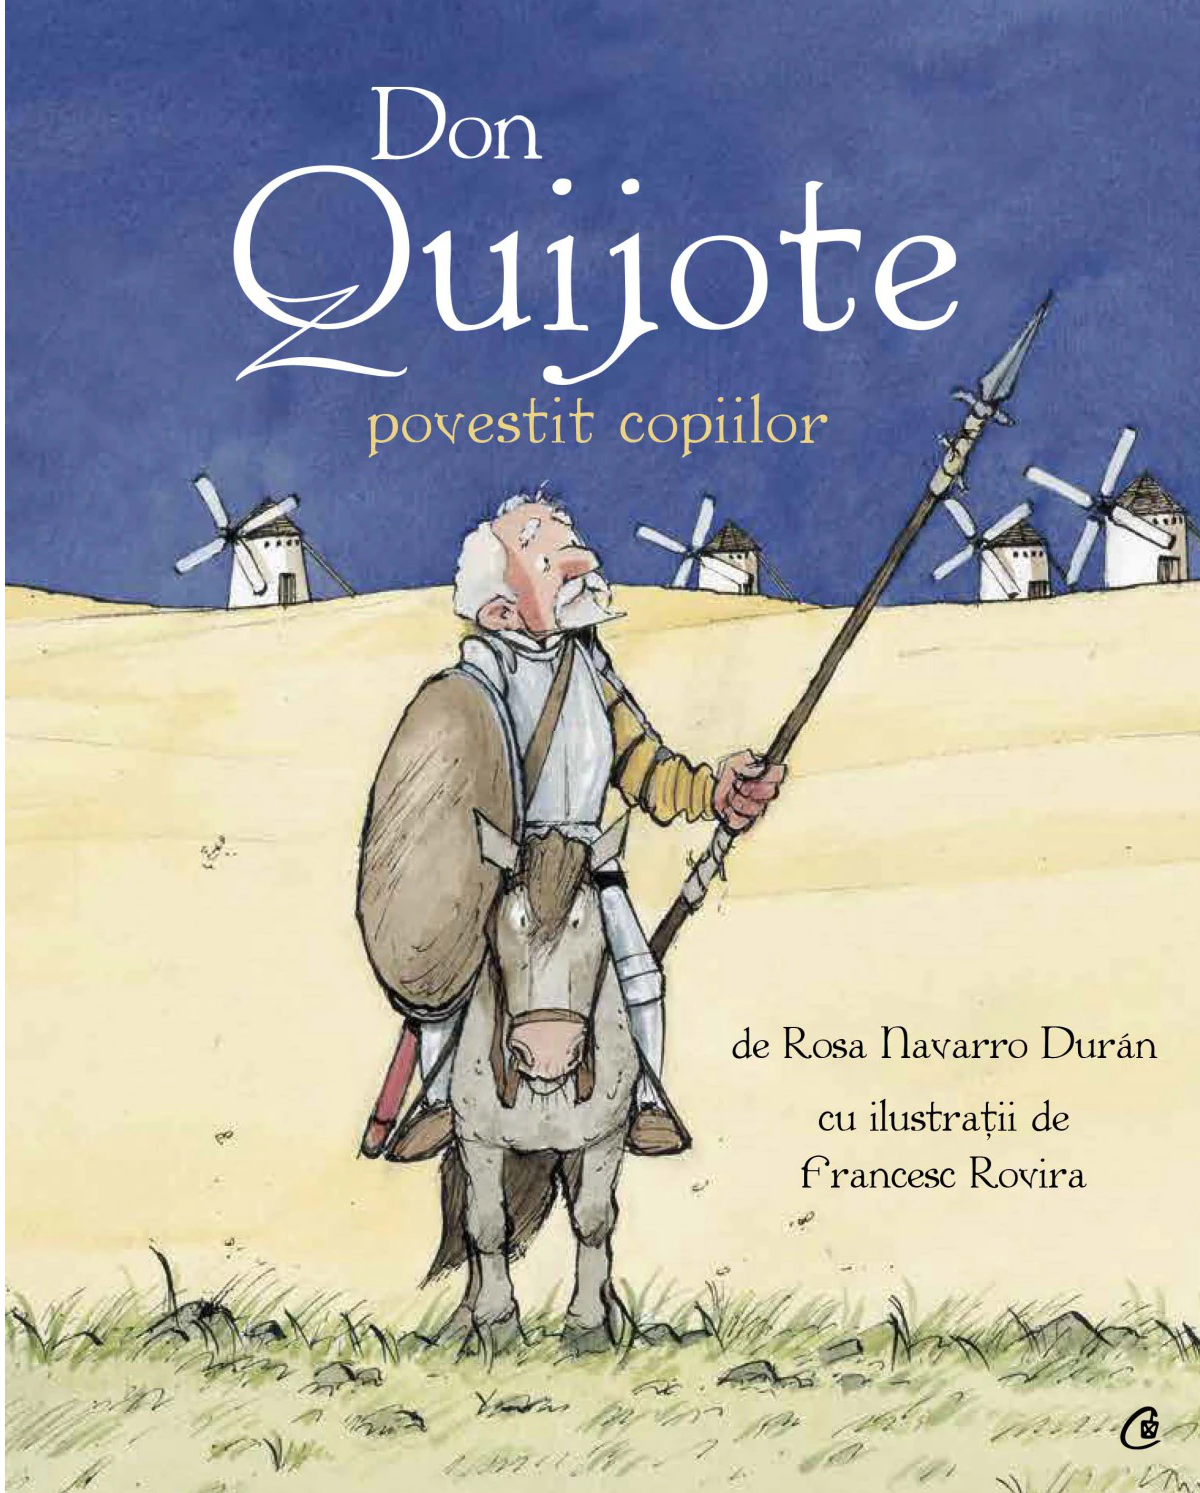 Don Quijote povestit copiilor | Rosa Navarro Duran carturesti.ro